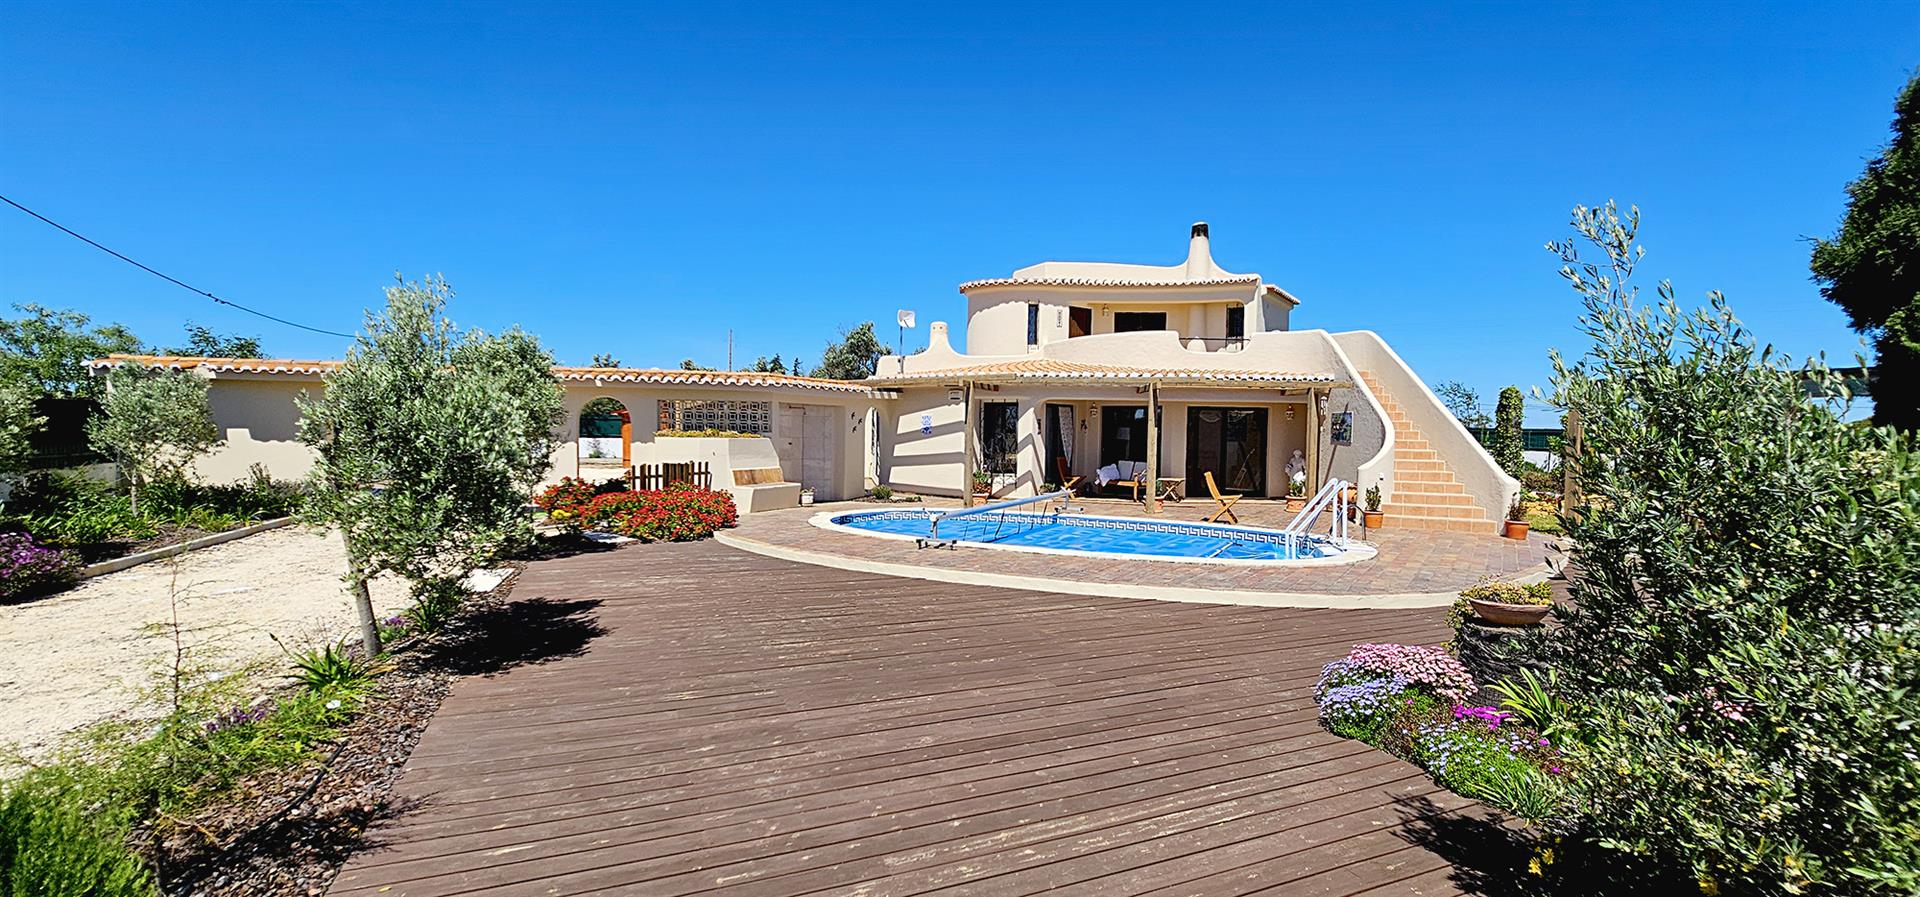 Bienvenue dans votre future maison belle Algarve